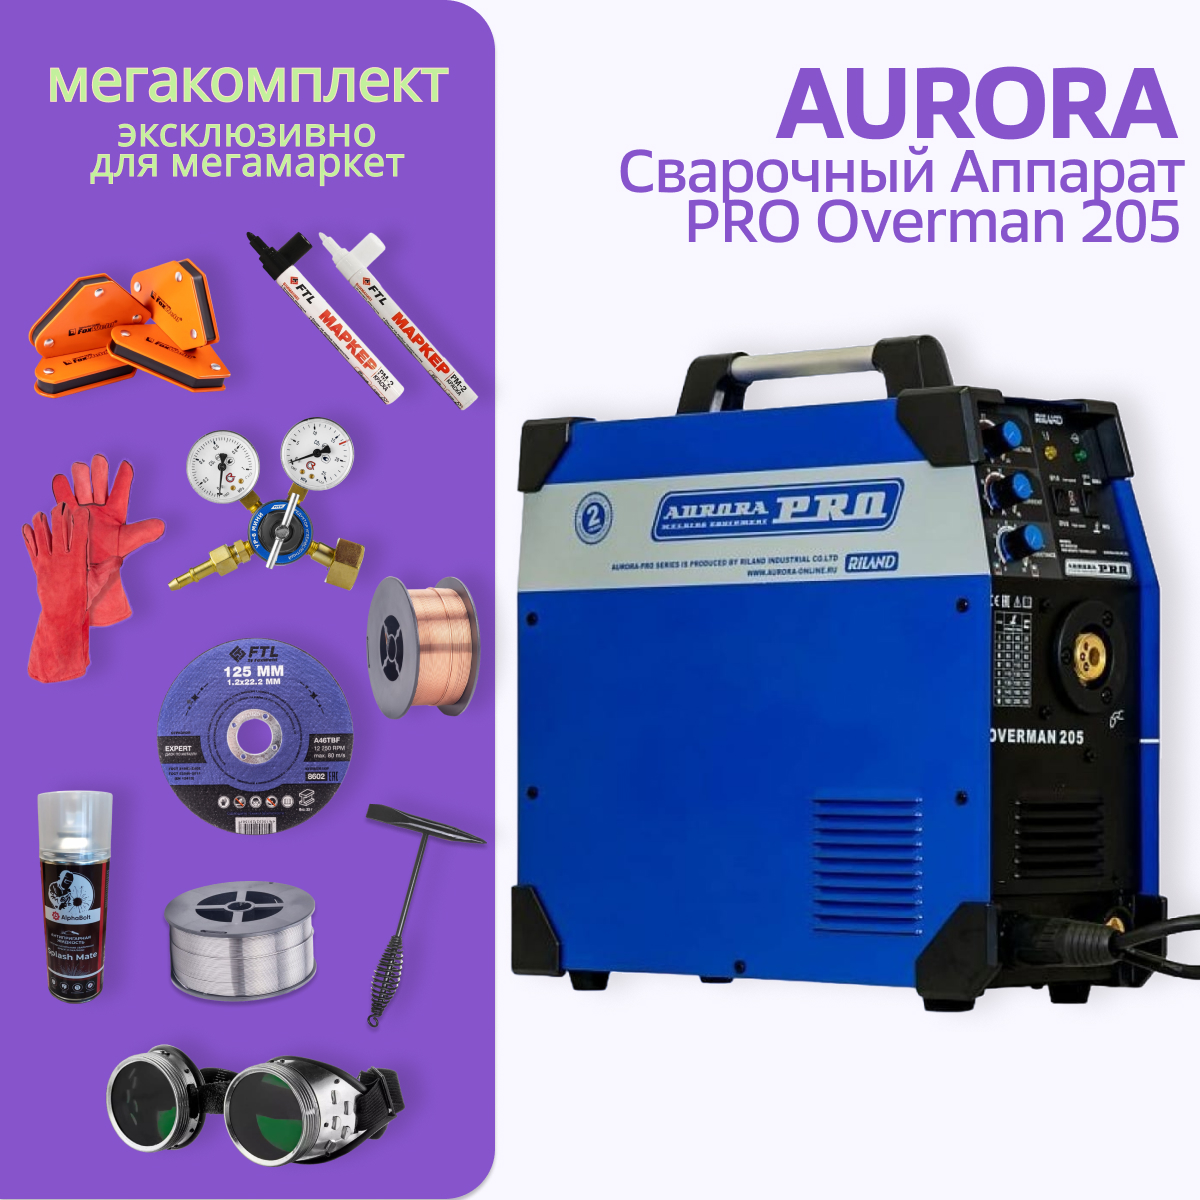 Сварочный полуавтомат Aurora PRO OVERMAN 205 + МЕГА комплект сварочный полуавтомат aurora overman 200 mosfet перчатки